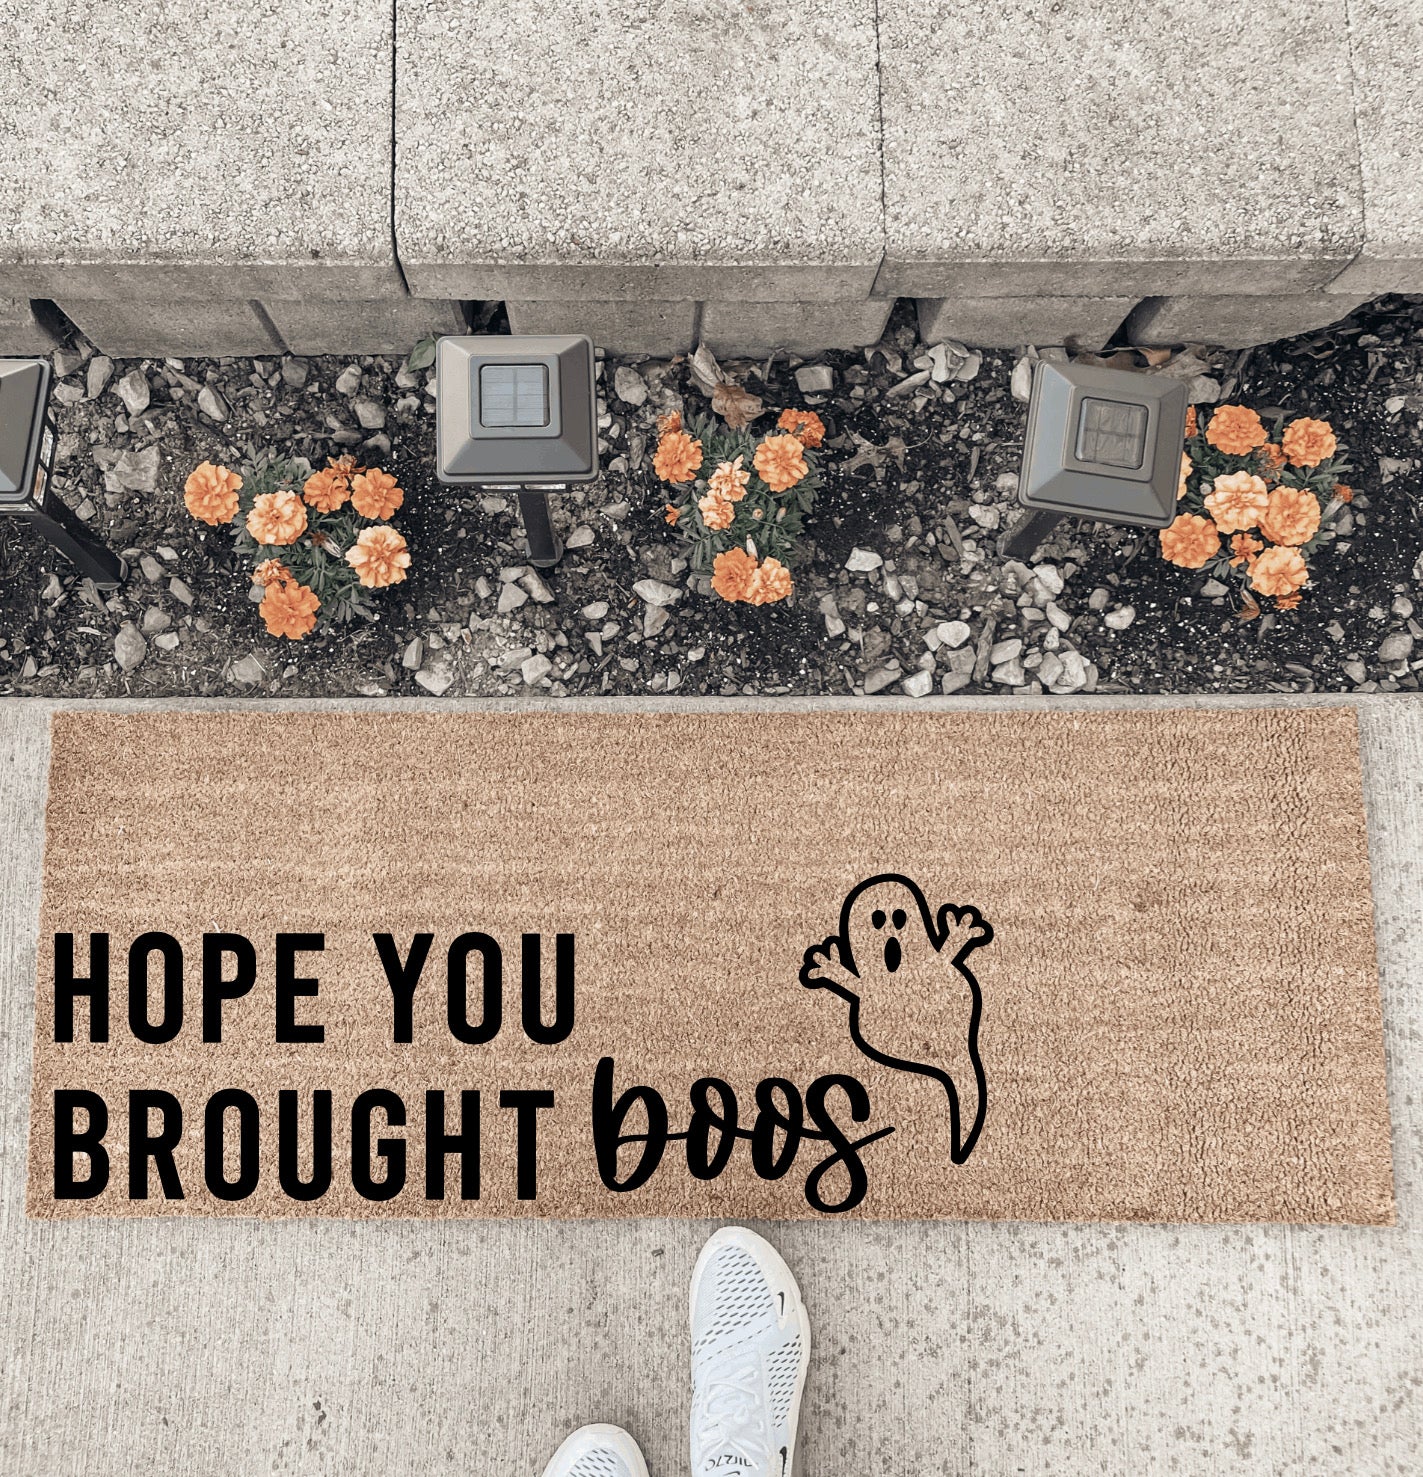 Hope You Brought Boos - Double Door Doormat